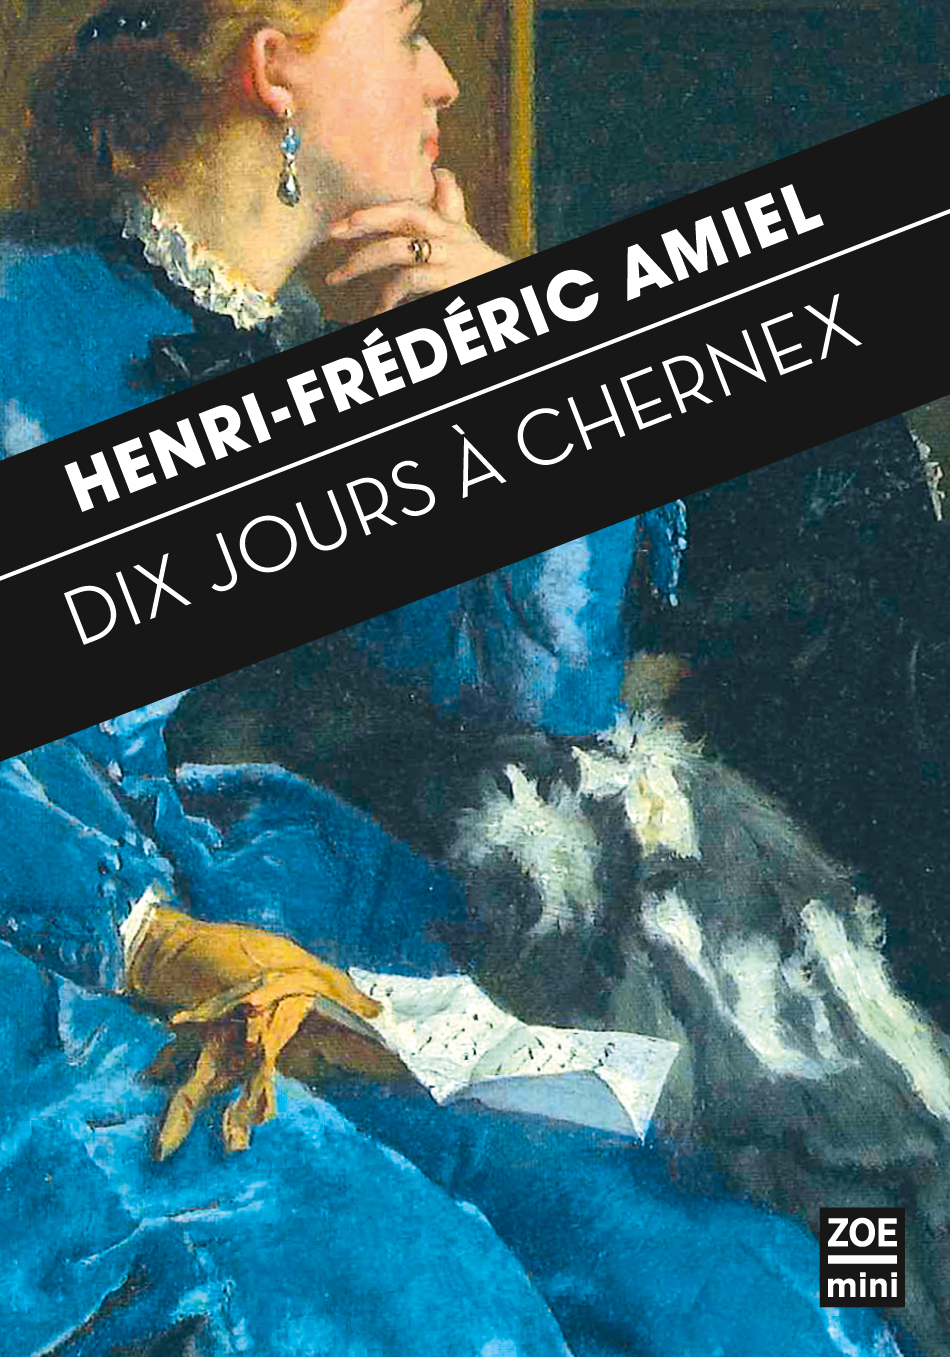 H.-F. Amiel, Dix jours à Chernex. Journal intime, 29 août-7 septembre 1871